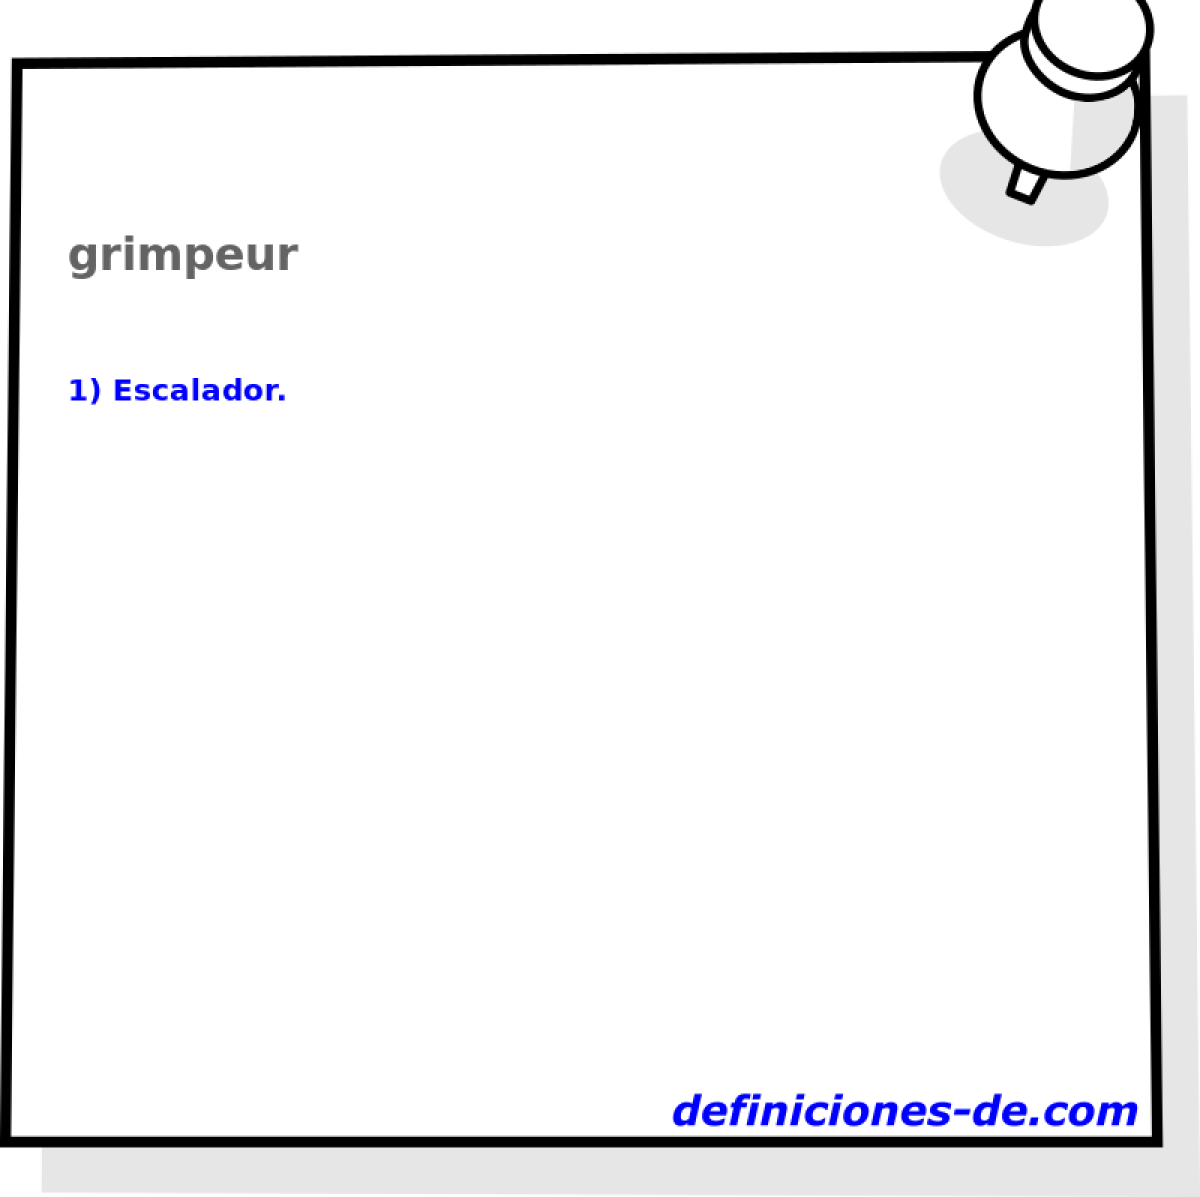 grimpeur 